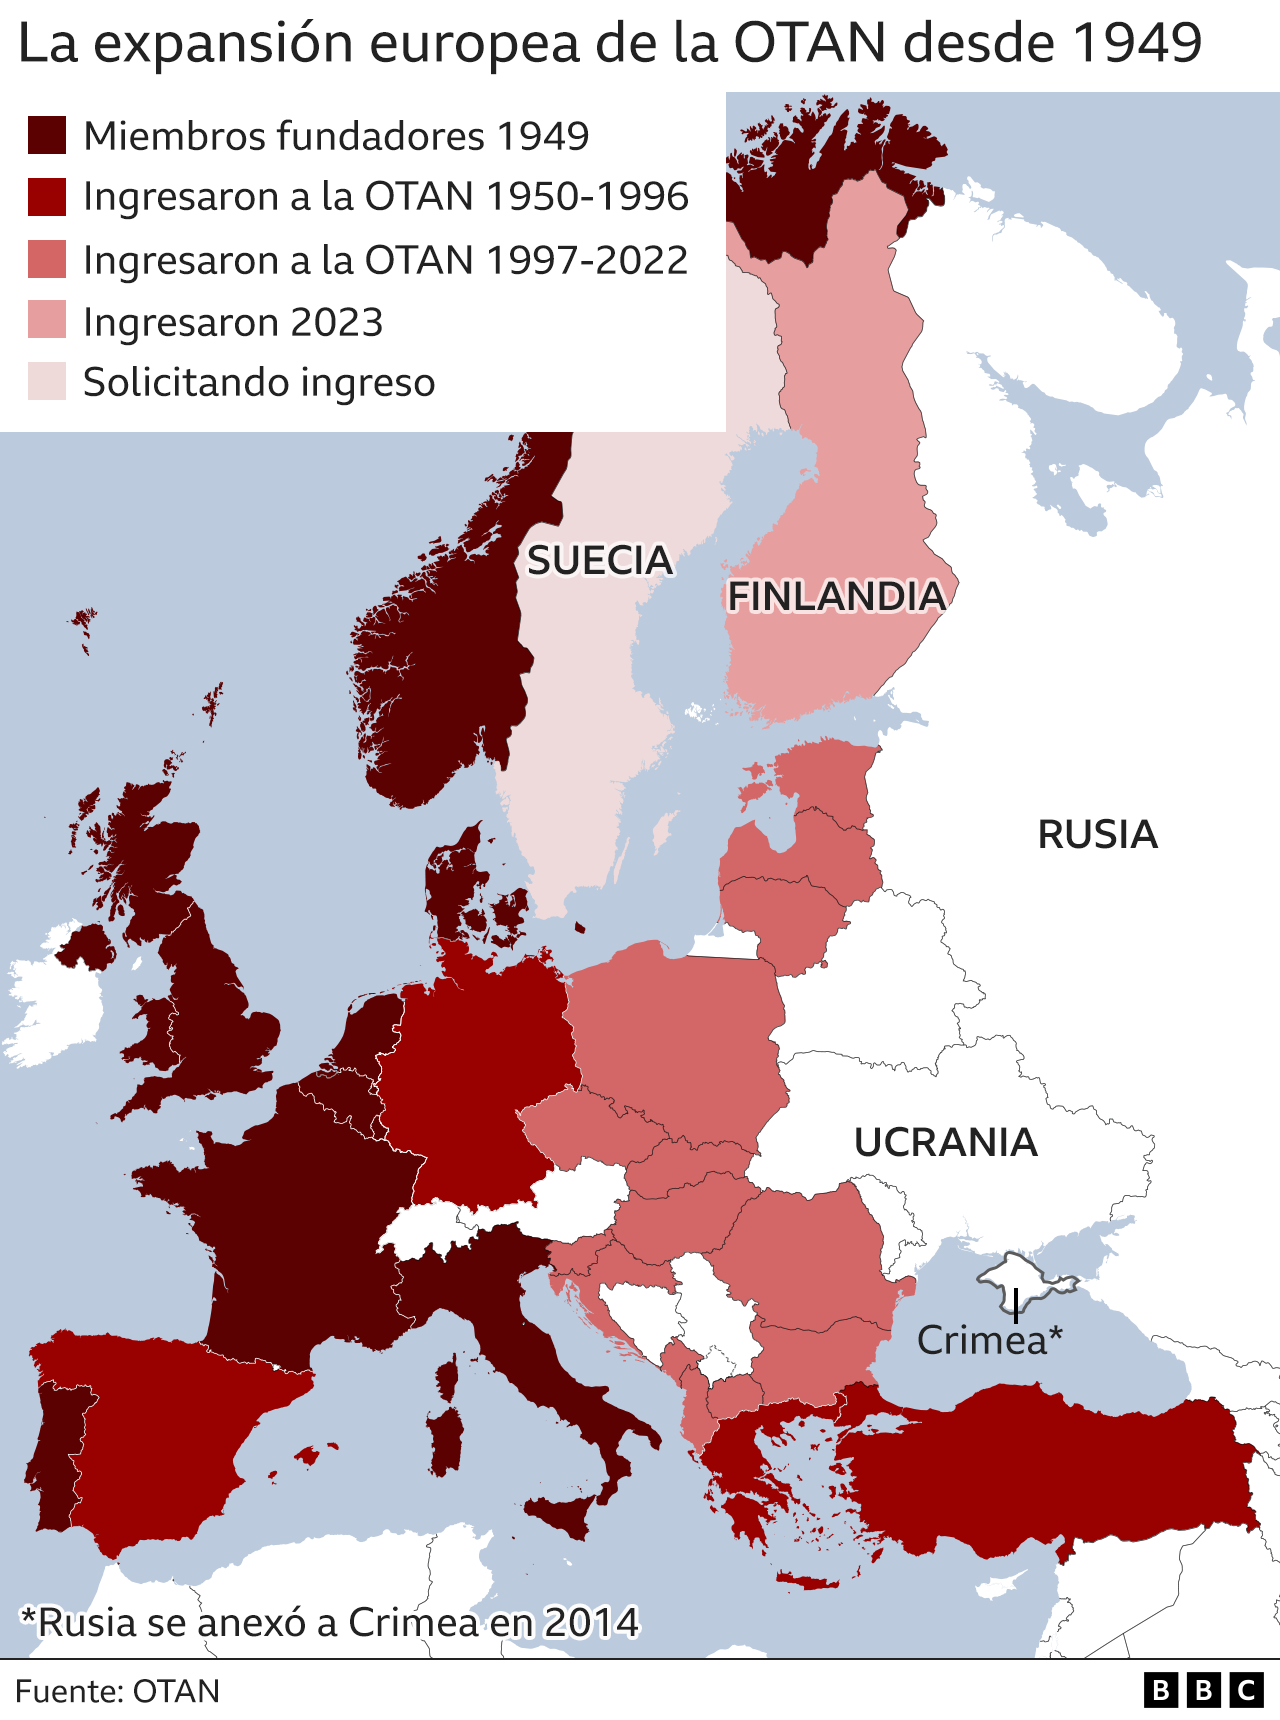 Finlandia se une a la OTAN el nuevo mapa que muestra cómo la Alianza